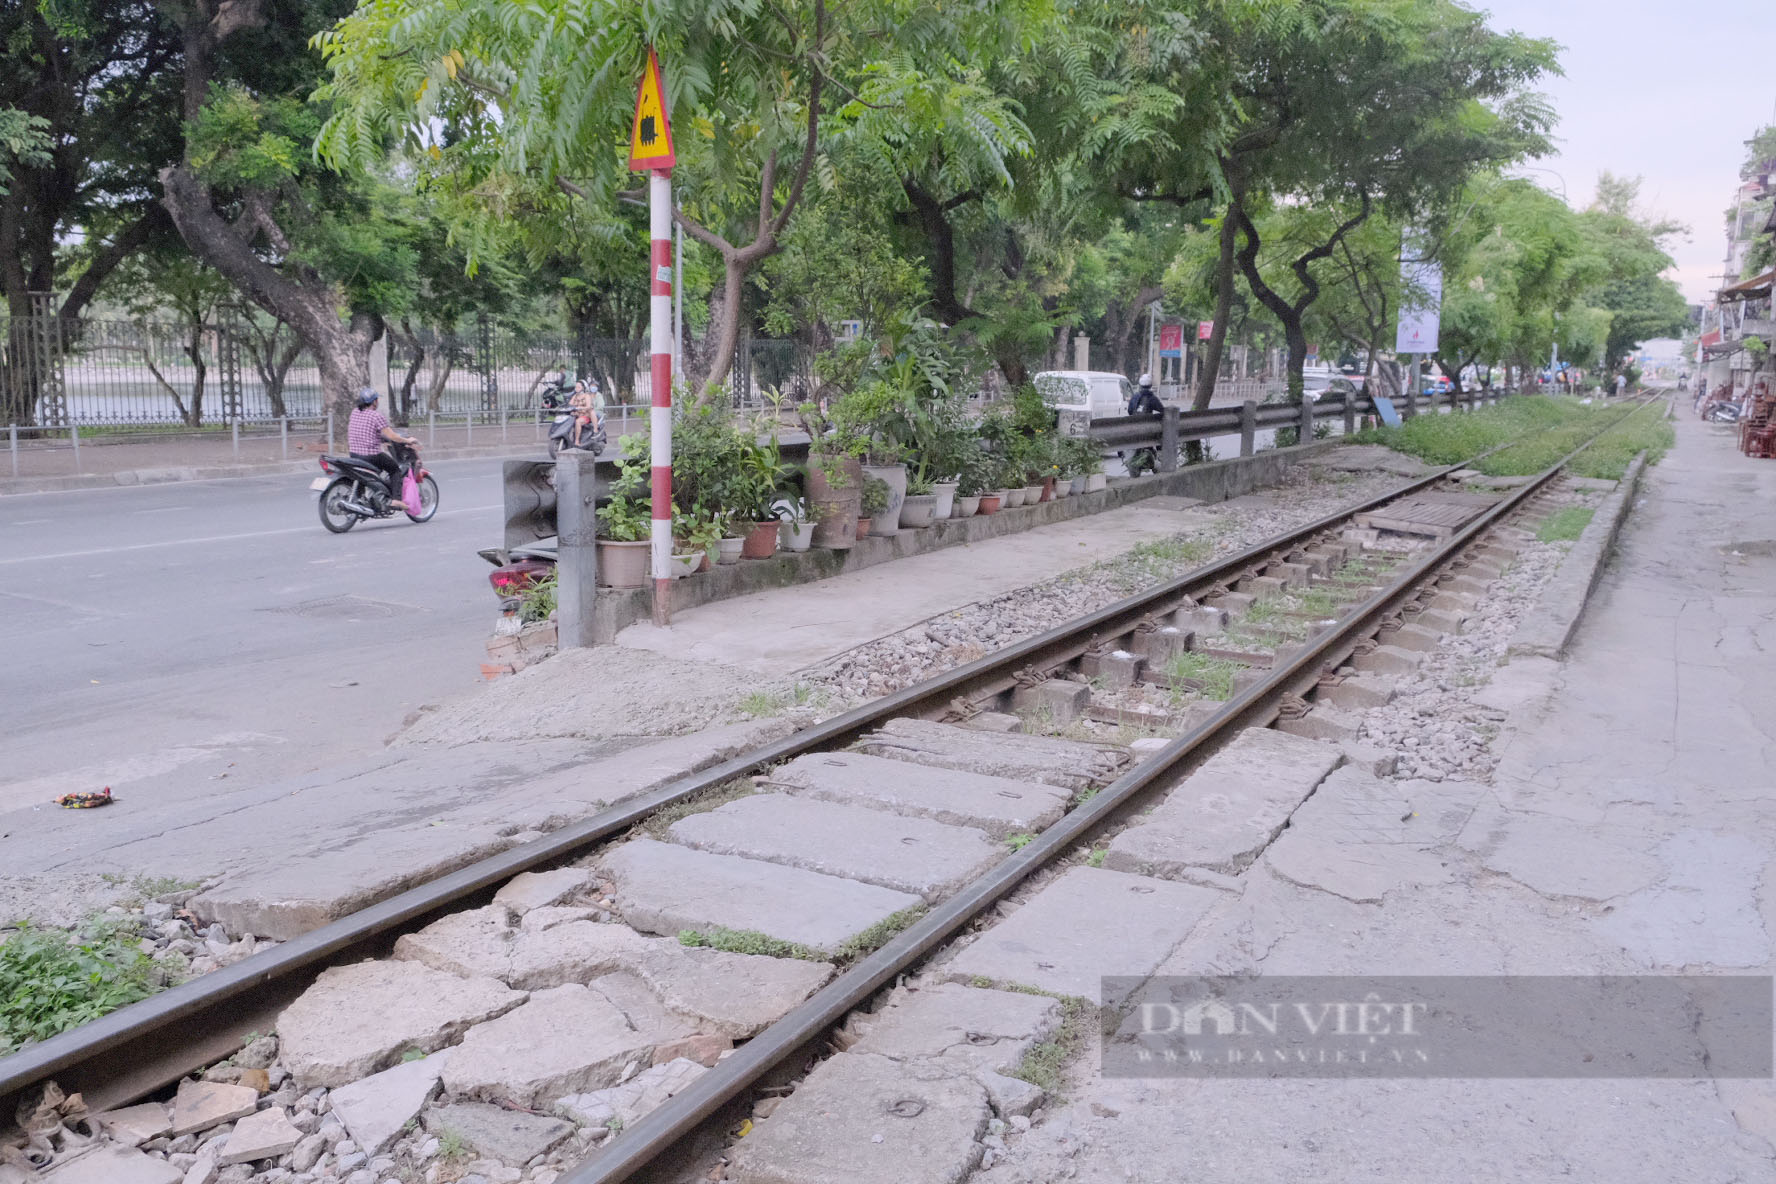 Hà Nội: Nguy hiểm rình rập từ đường dân sinh tự phát cắt ngang đường sắt - Ảnh 2.